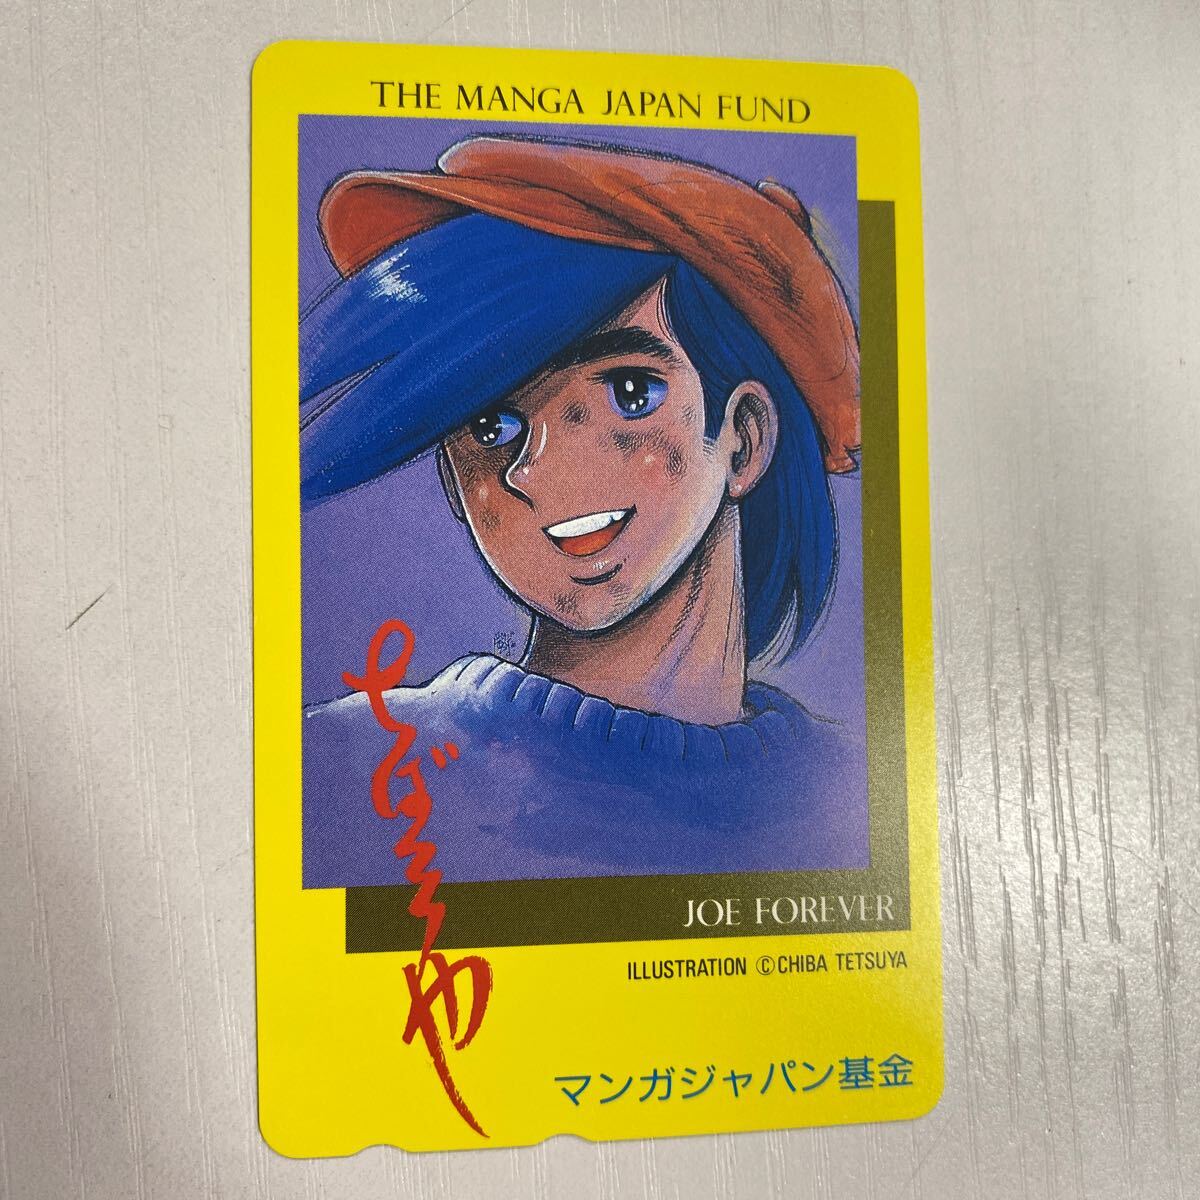 [ прекрасный товар ] не использовался Akira день. Joe ... блеск manga (манга) Japan фонд телефонная карточка 50 раз 